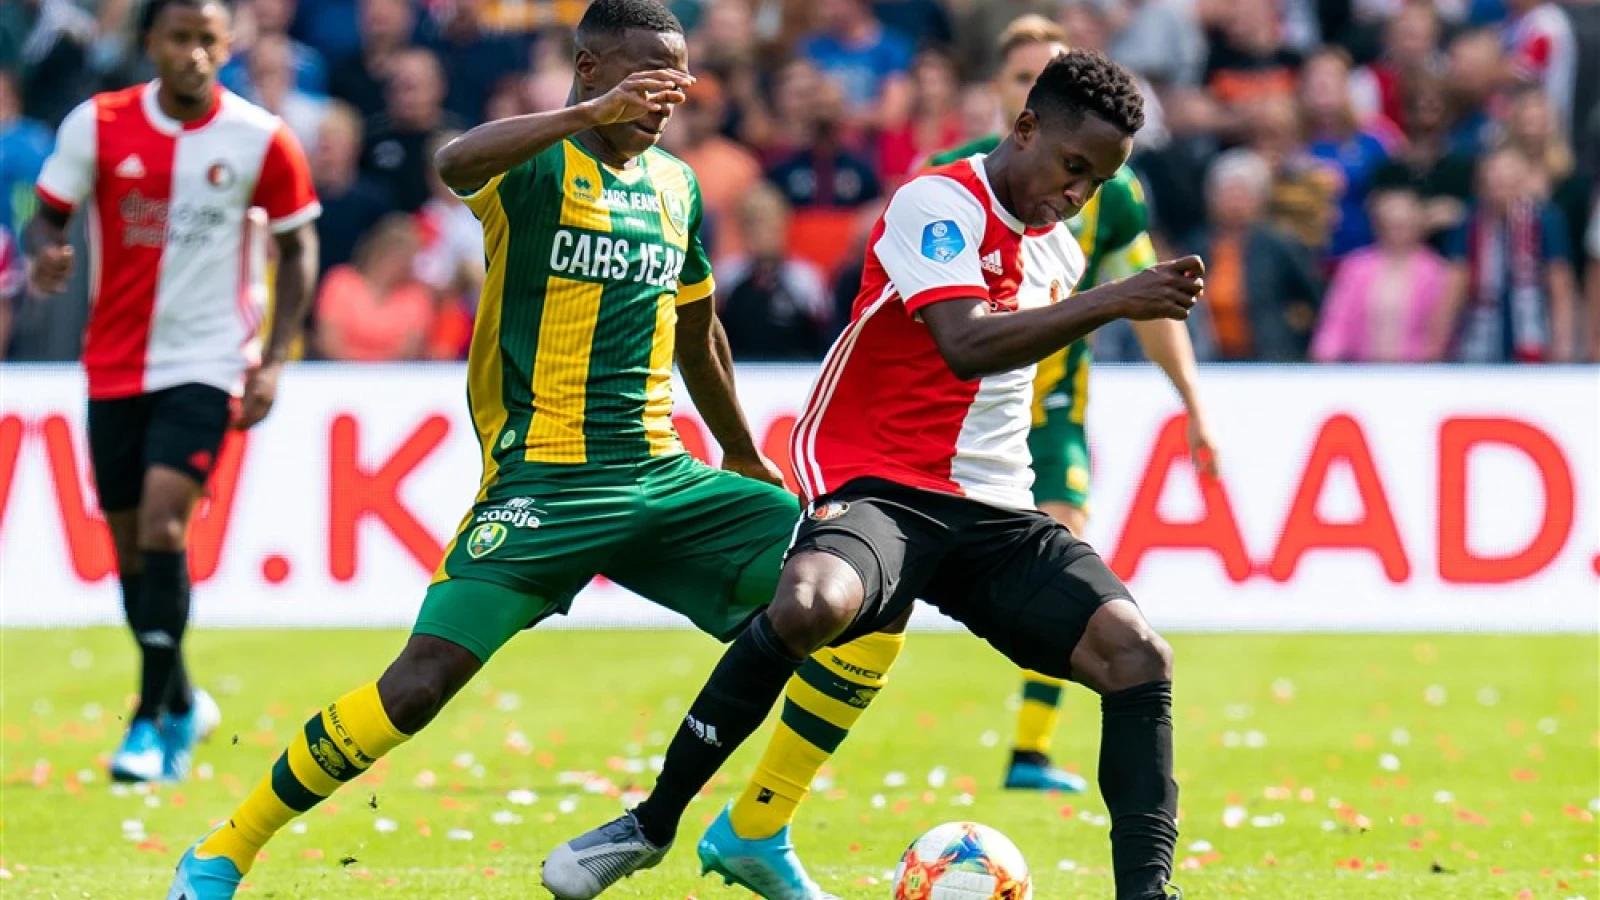 LIVE | Feyenoord - ADO Den Haag 3-2 | Einde wedstrijd